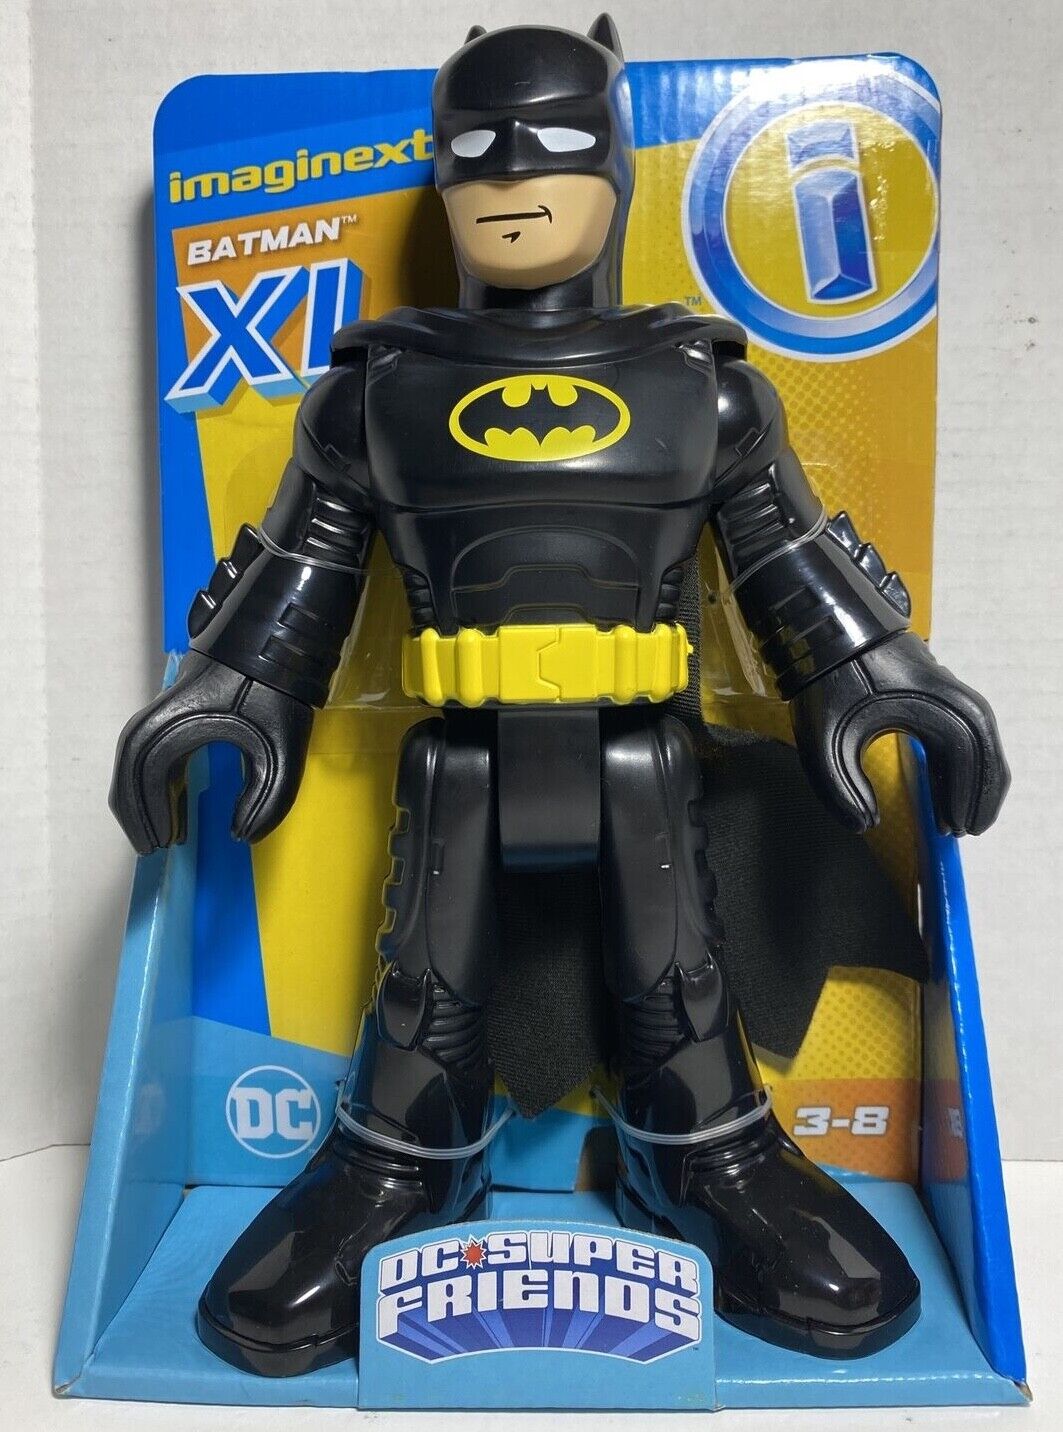 Fisher Price DC Super Friends Imaginext Batman 10-Inch XL Figu...